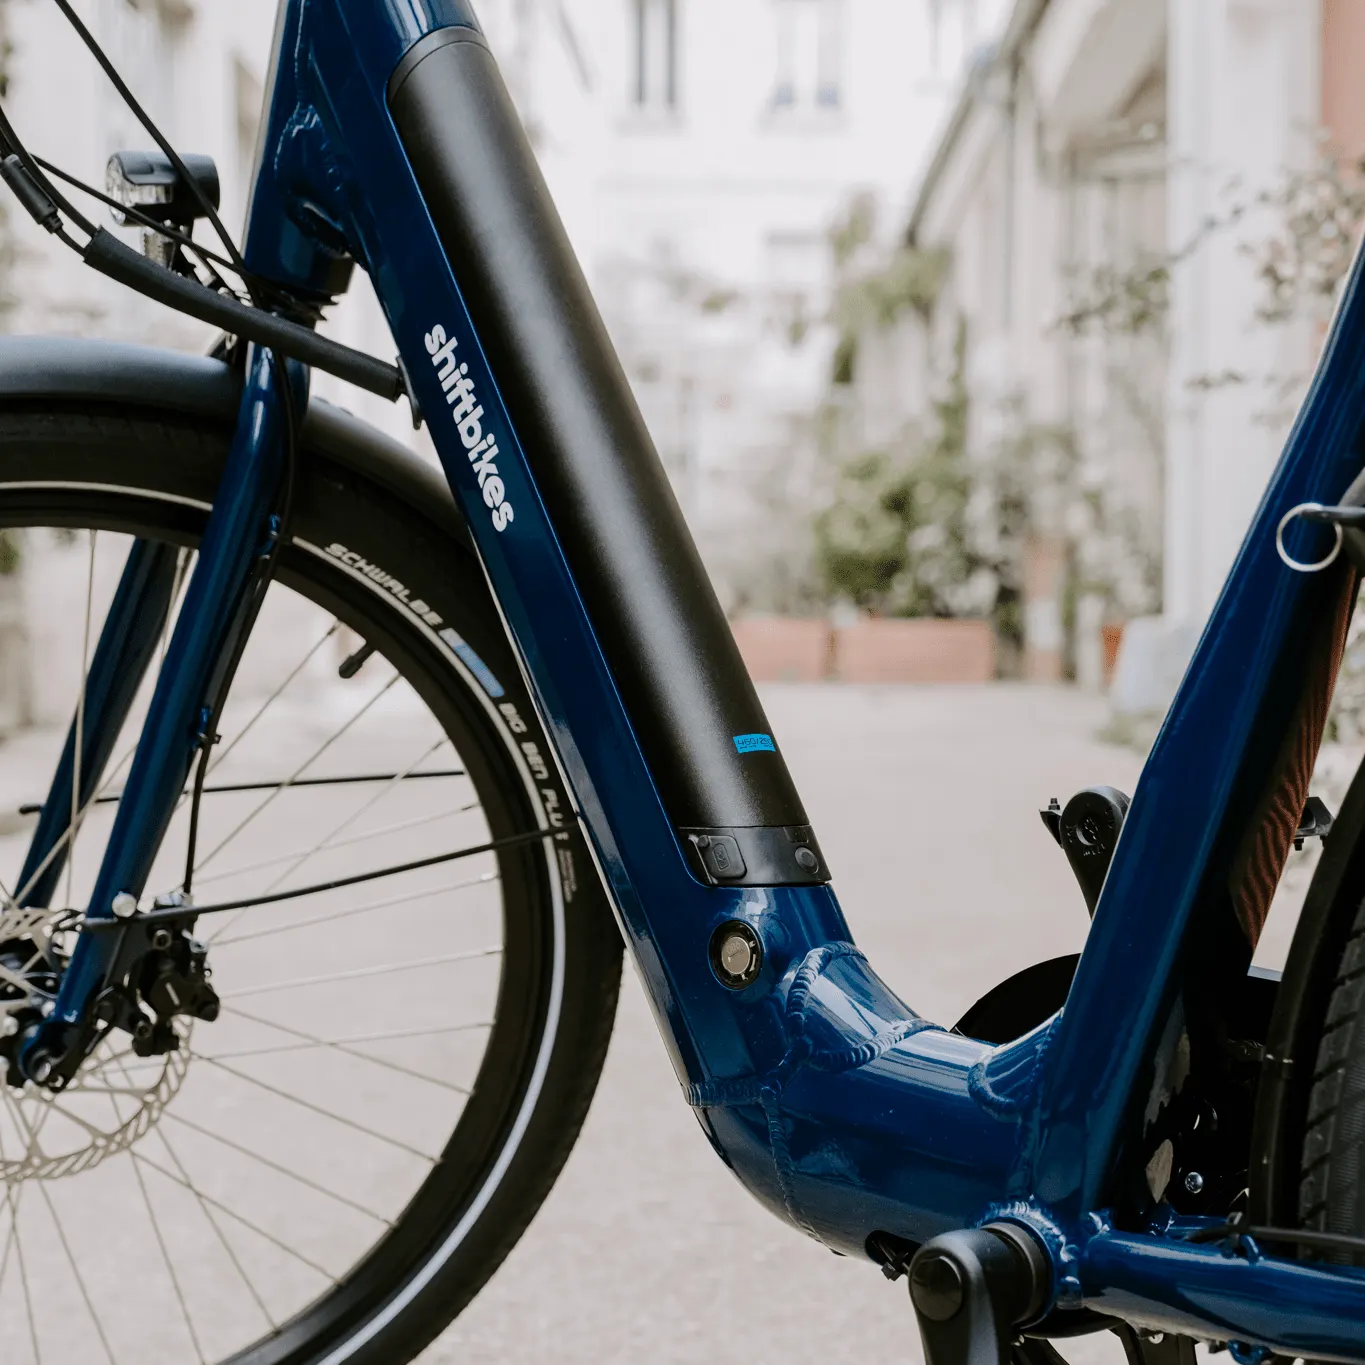 Une image contenant vélo, extérieur, bleu, garé

Description générée automatiquement